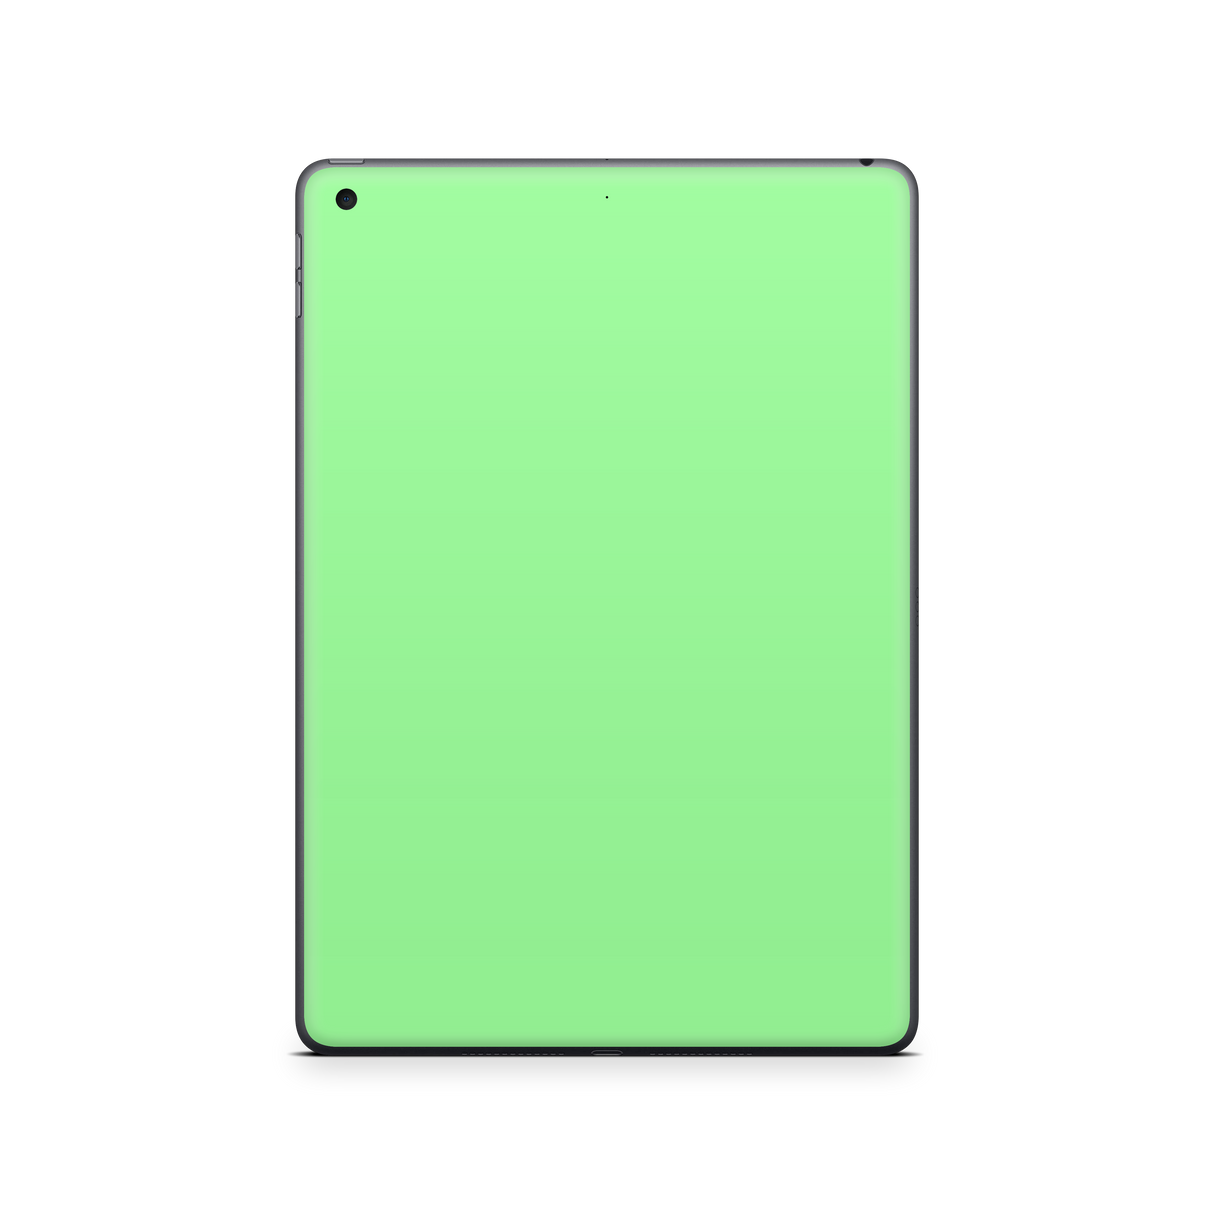 Apple iPad Mint Green Skin